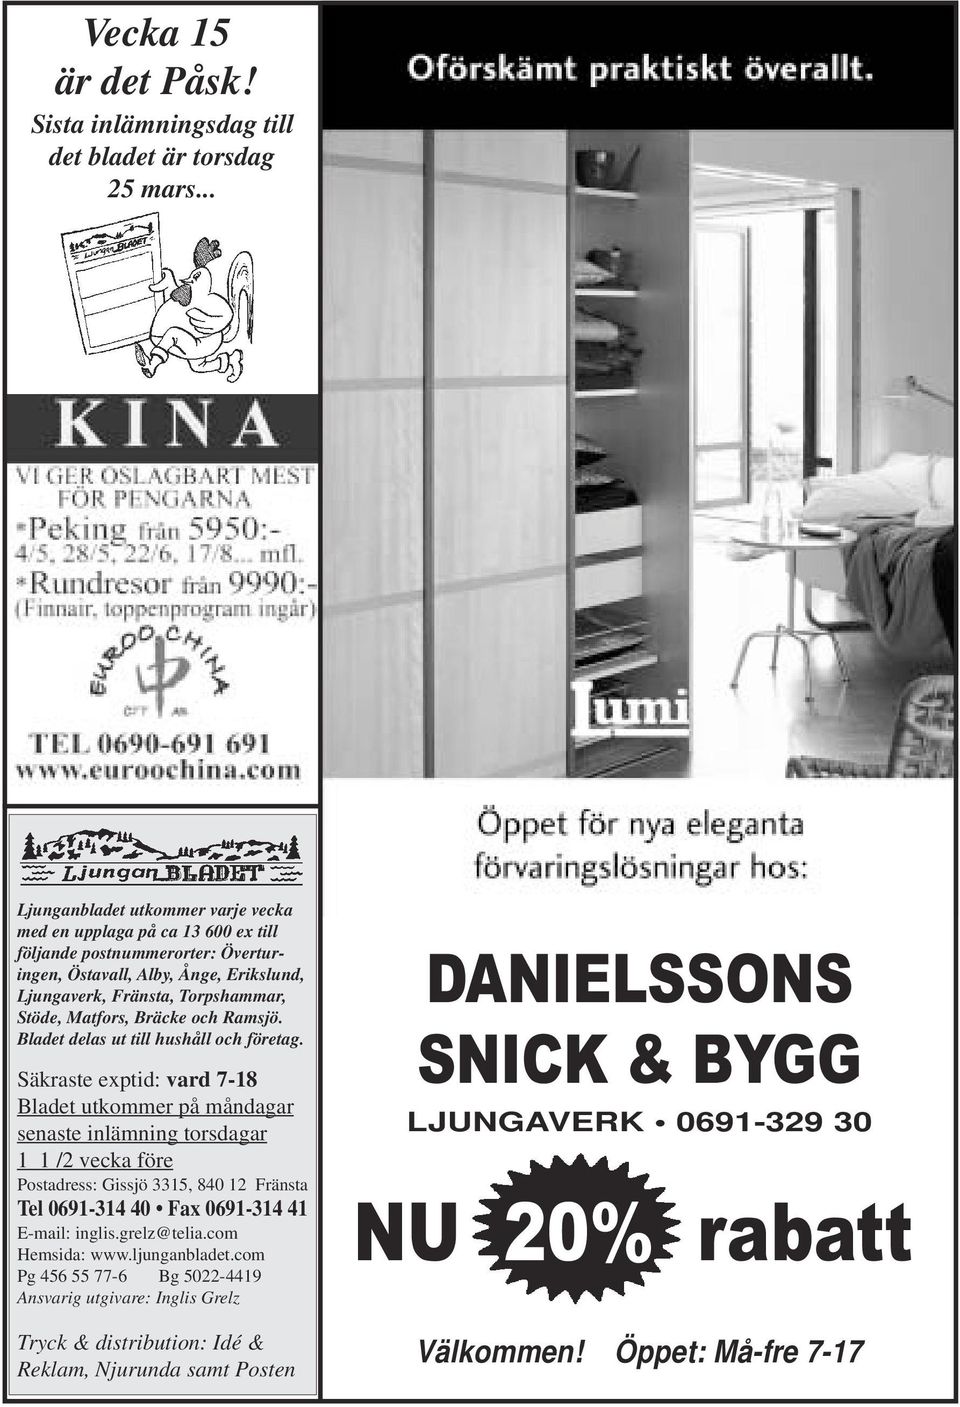 Matfors, Bräcke och Ramsjö. Bladet delas ut till hushåll och företag.